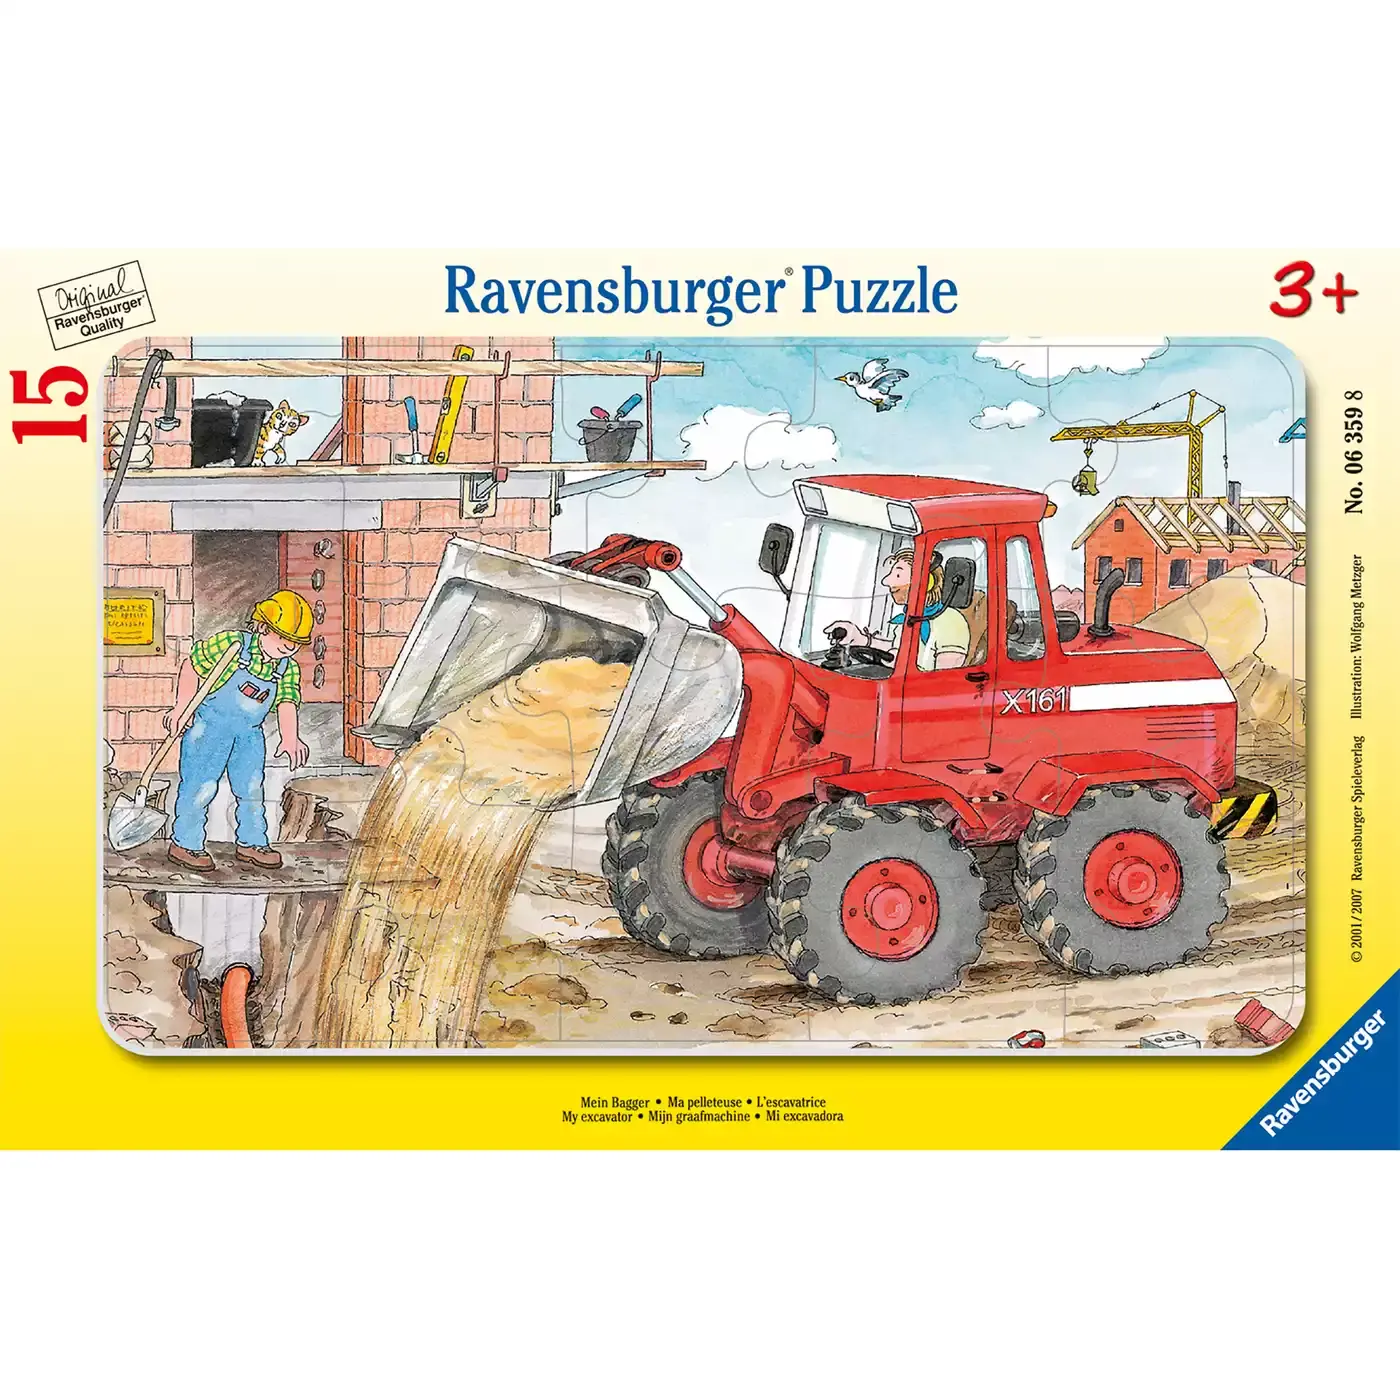 Kinderpuzzle Mein Bagger Ravensburger 2000511219500 1